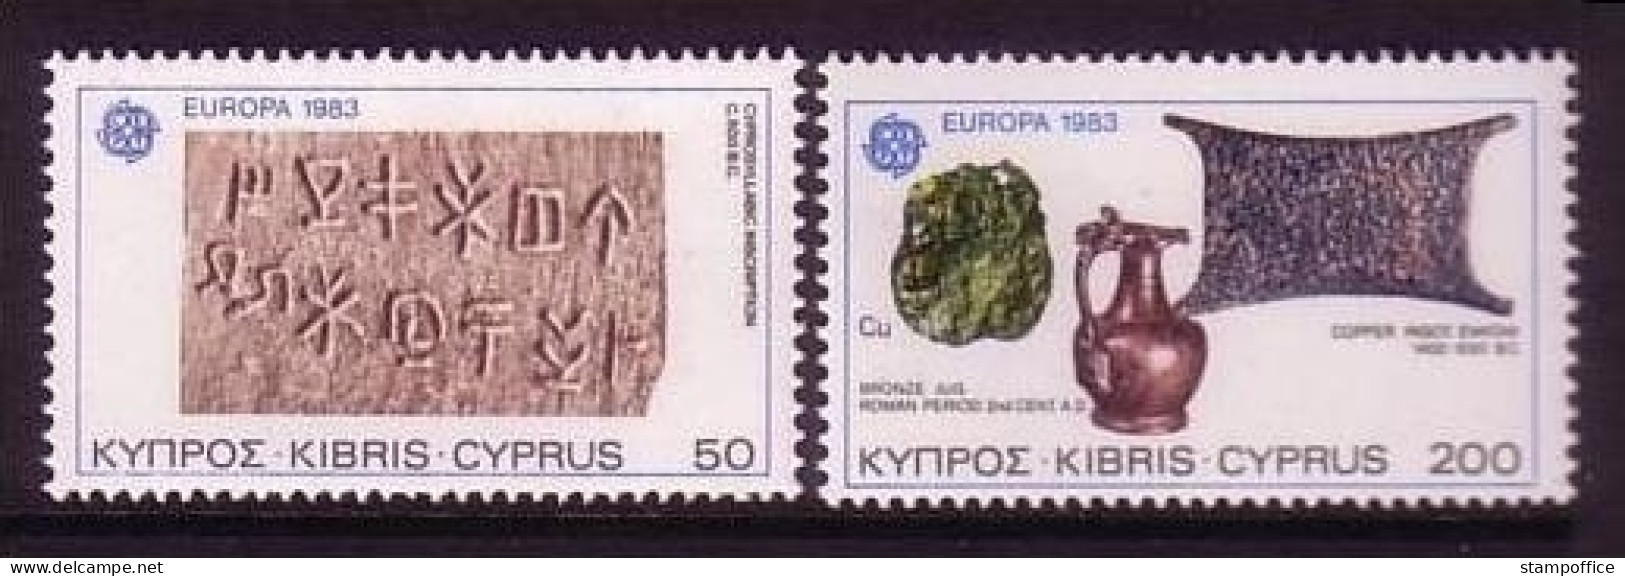 ZYPERN MI-NR. 582-583 POSTFRISCH(MINT) EUROPA 1983 GROSSE WERKE - 1983